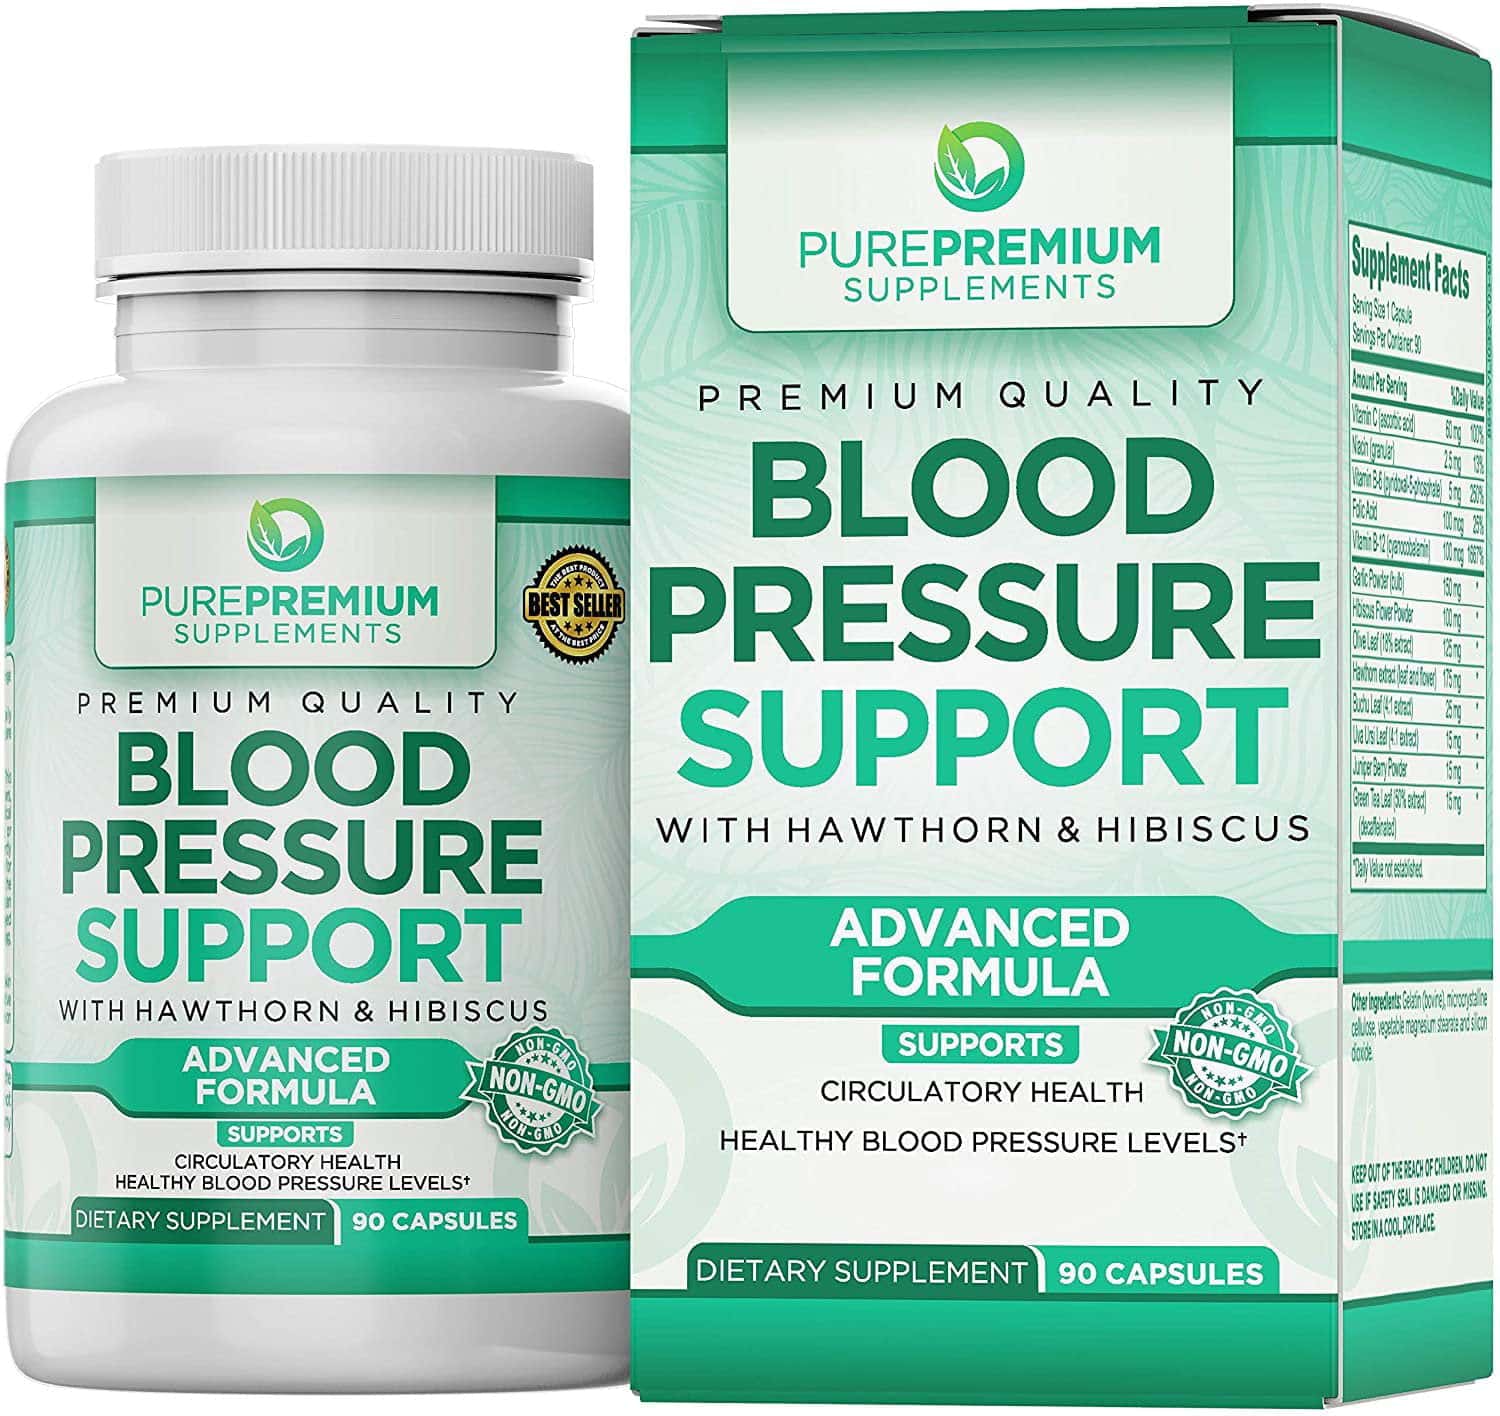 Blood Pressure Support by PurePremium Supplements